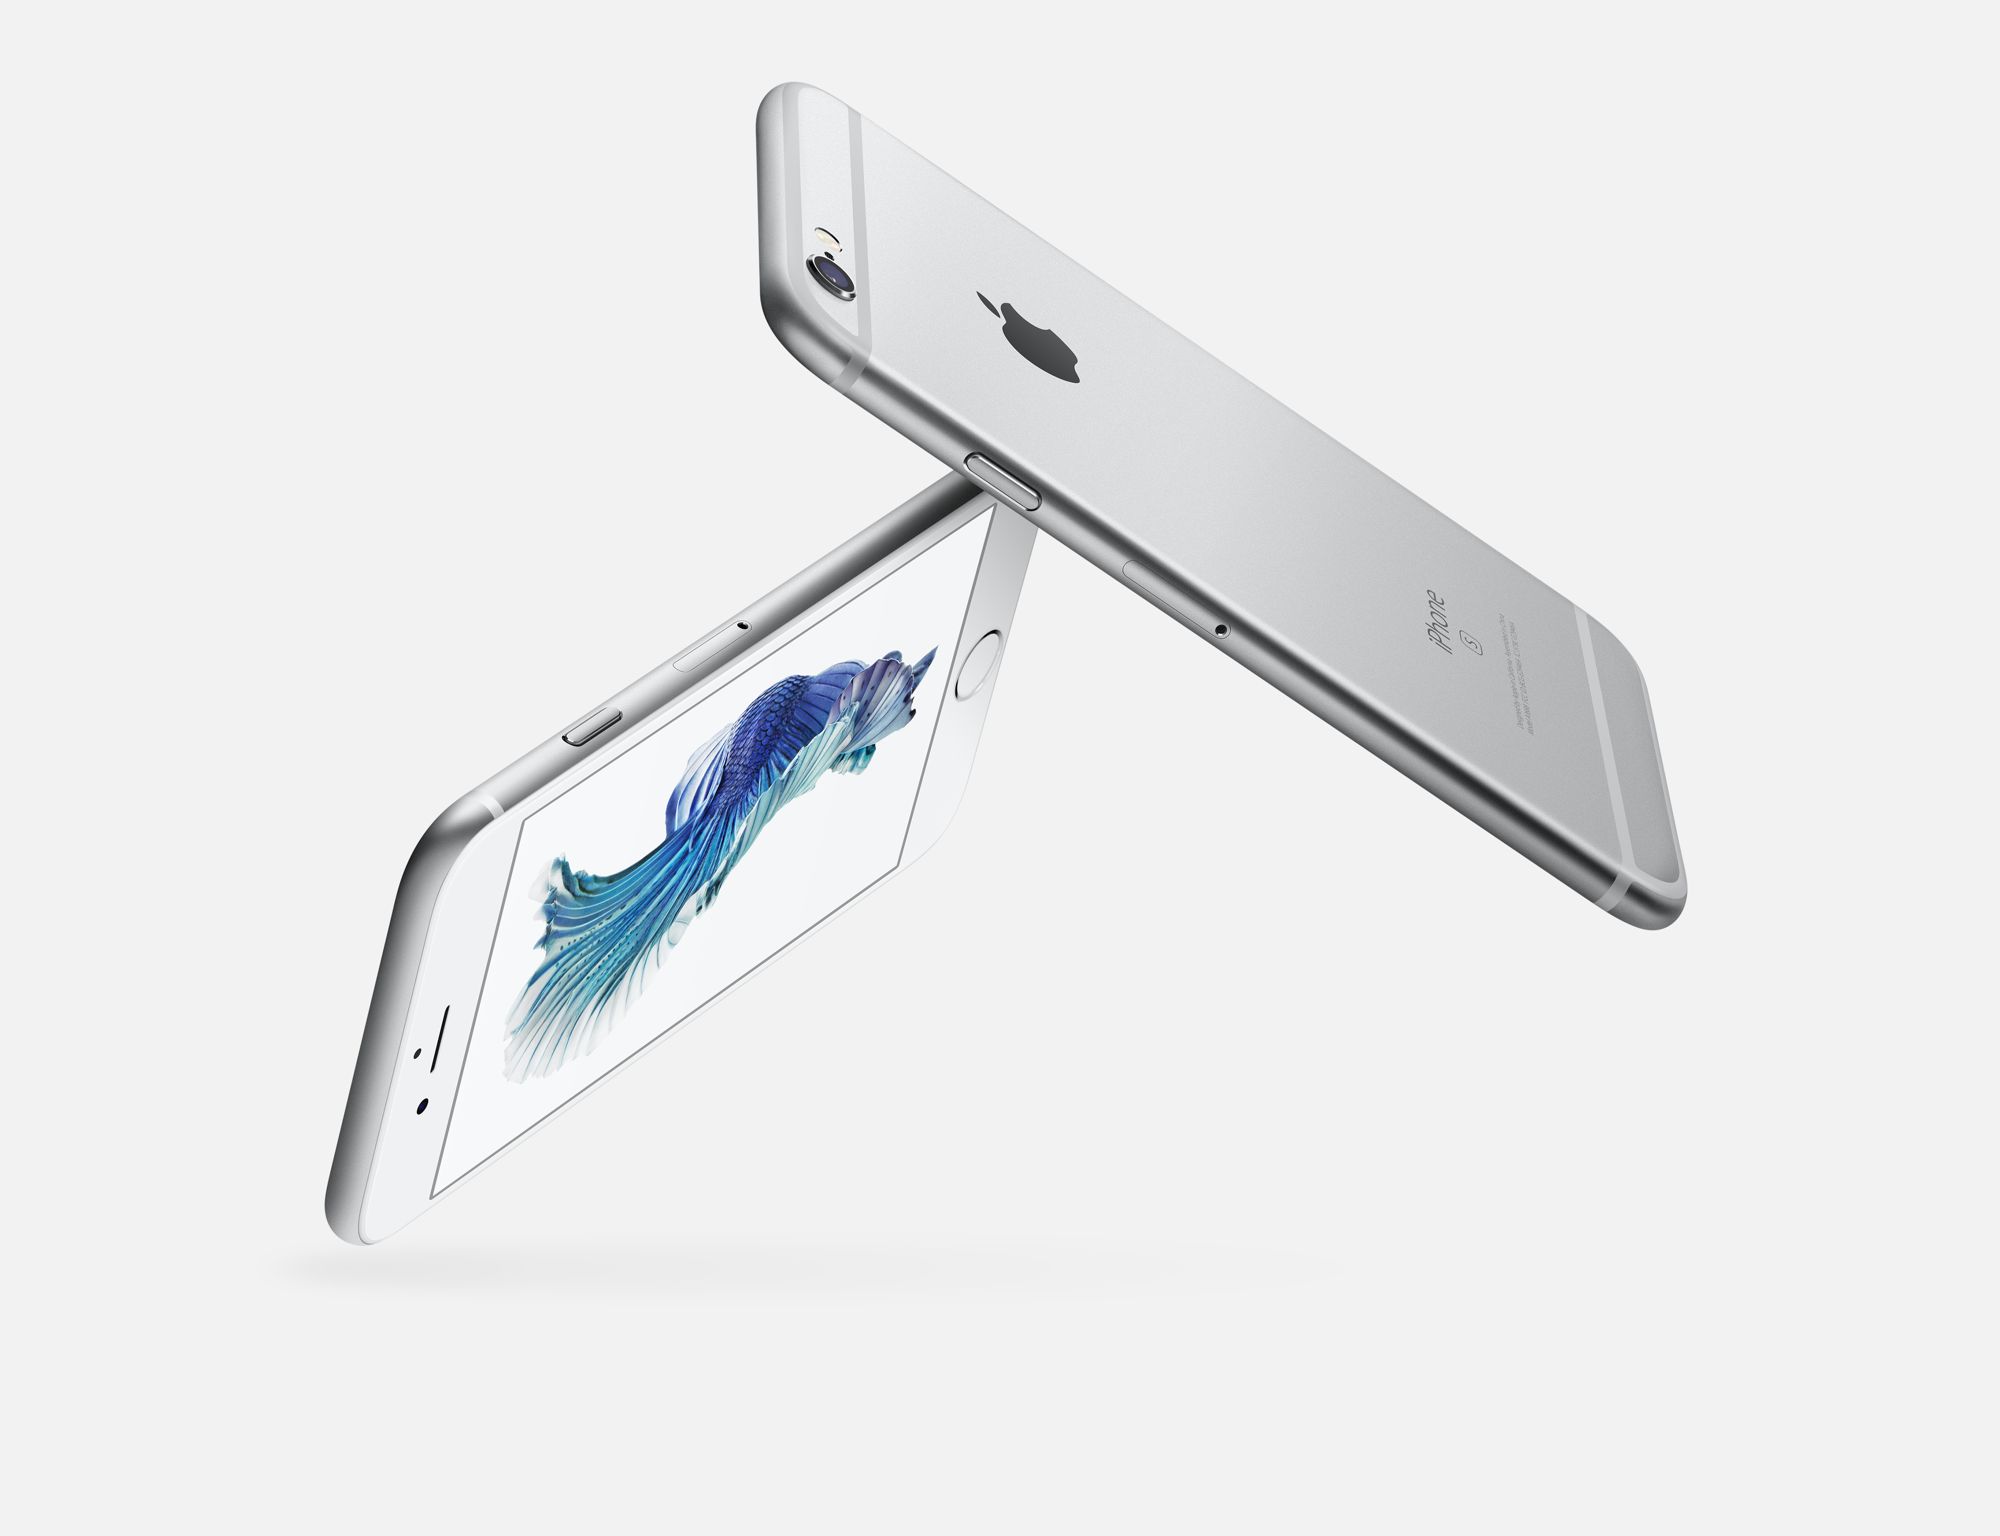 Immagine pubblicata in relazione al seguente contenuto: Apple potrebbe lanciare un iPhone 7 Plus con memoria interna da 256GB | Nome immagine: news23584_Apple-iPhone-6s_1.jpg